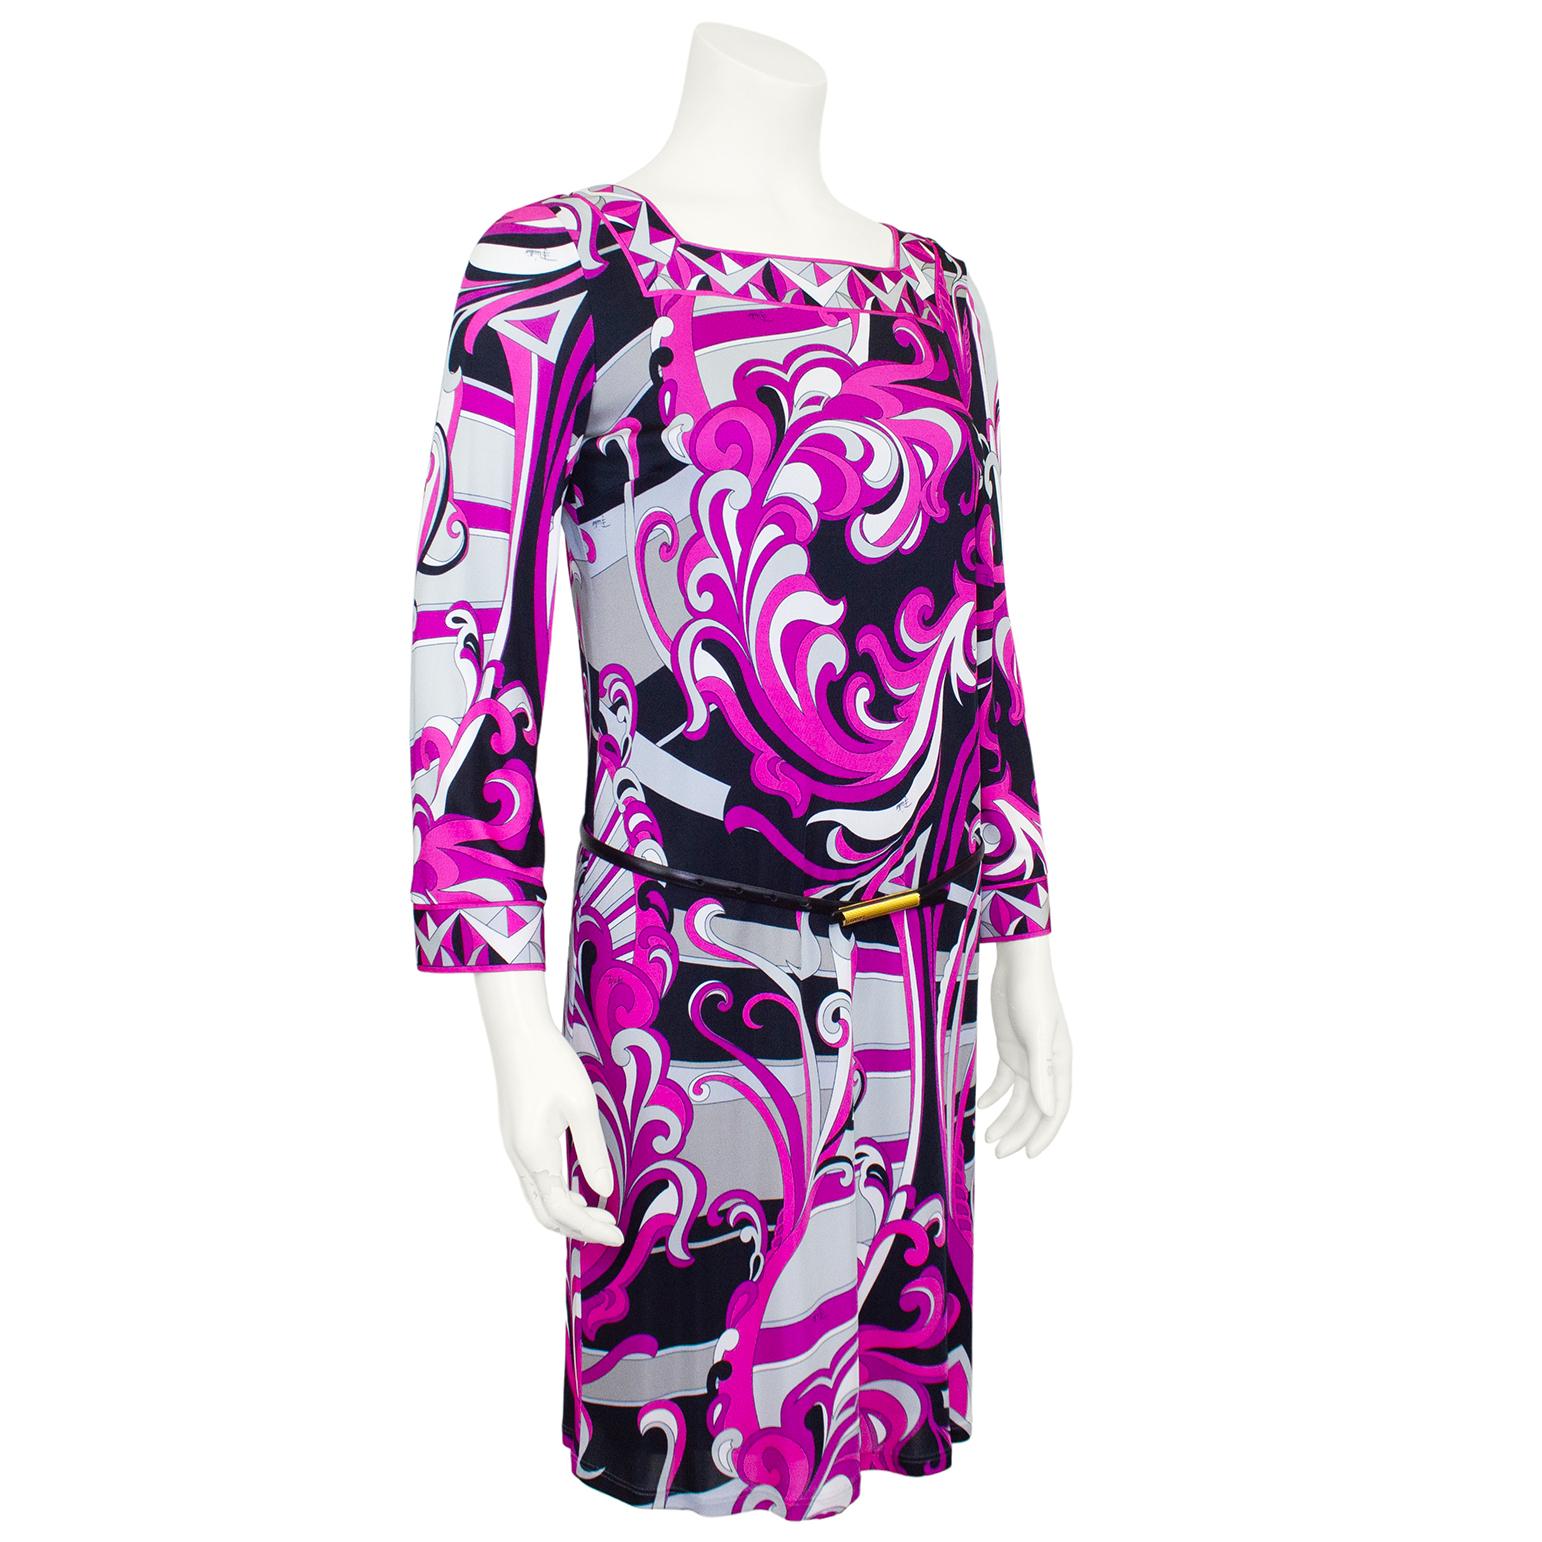 Emilio Pucci bedrucktes Lycra-Kleid aus den 1990er Jahren. Abstrakter, wirbelnder rosa, grauer und schwarzer Blumendruck mit geometrischem Besatz an Ausschnitt und Manschetten. Quadratischer Ausschnitt und leicht glockige lange Ärmel. Dünner